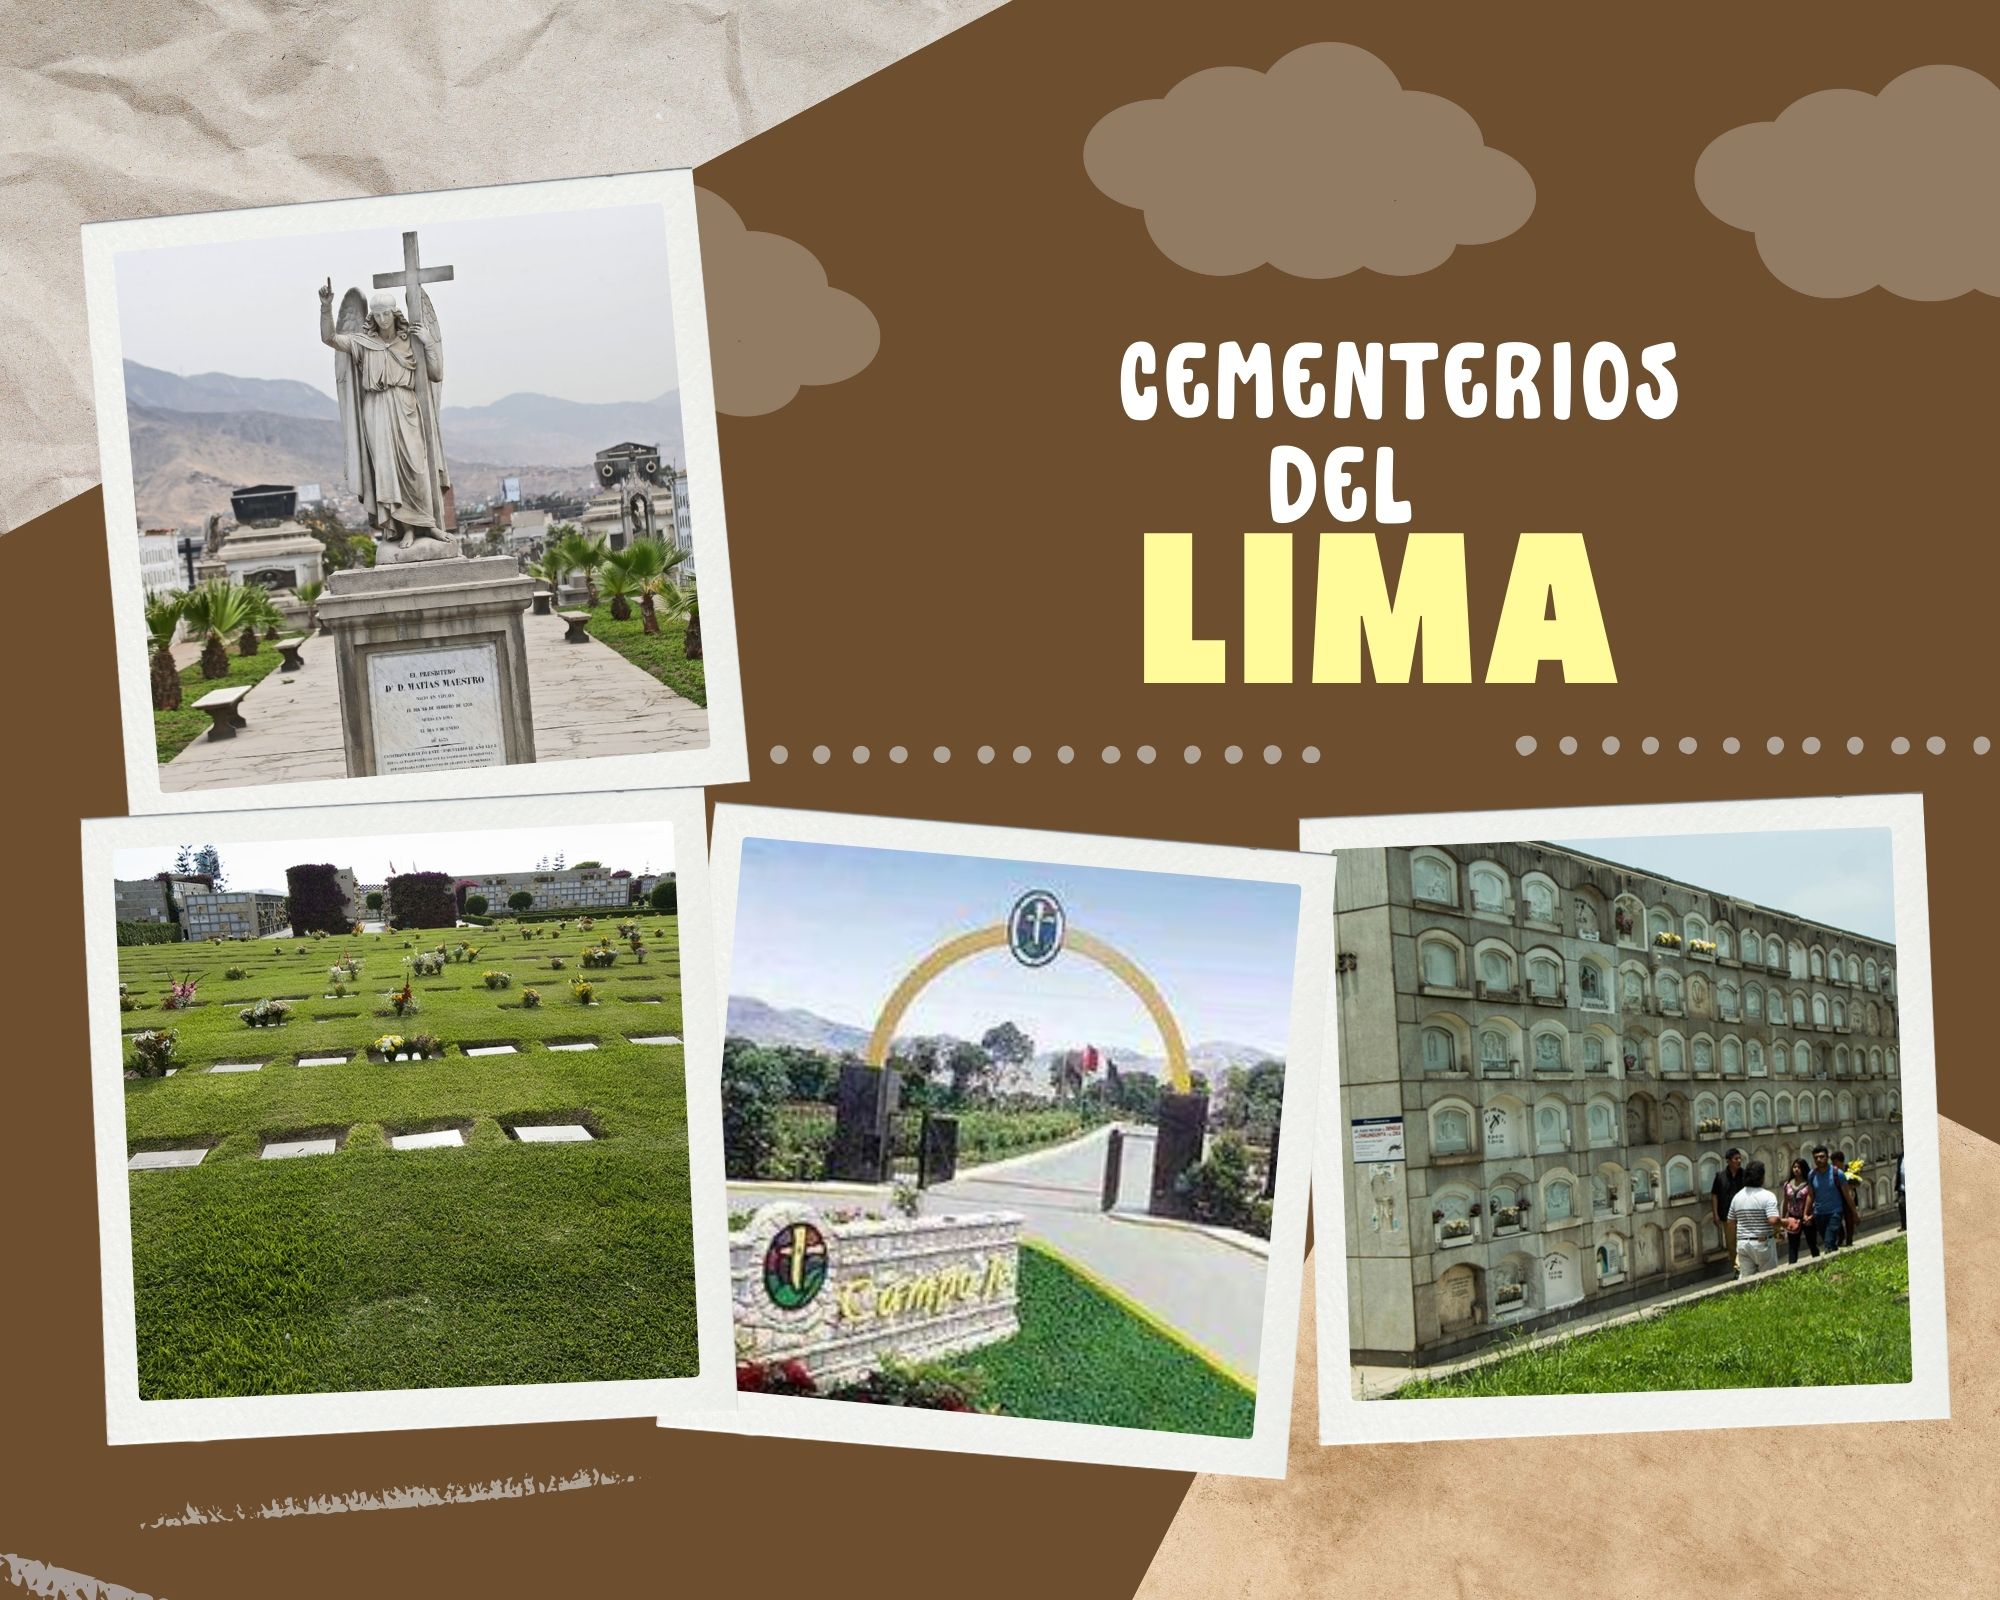 Cementerios de Lima